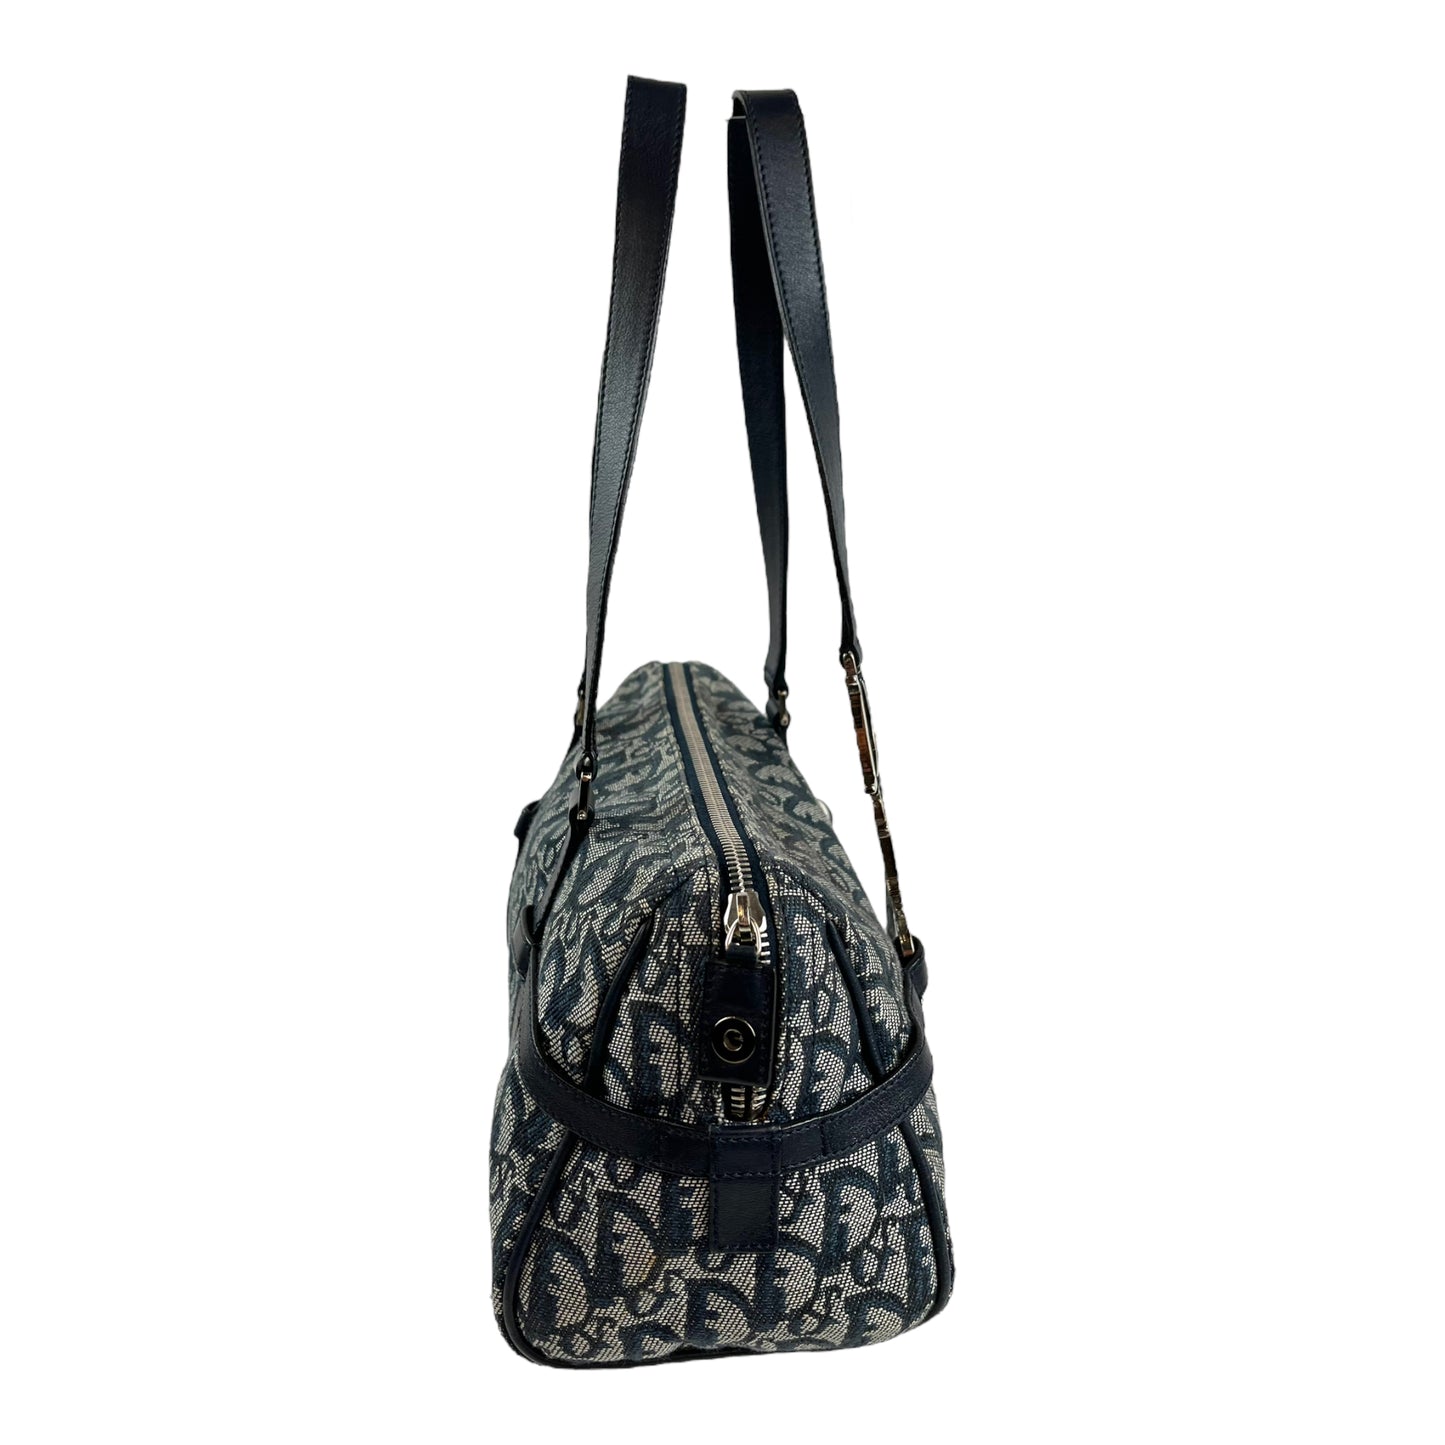 Dior Diorissimo Charms Shoulder Bag